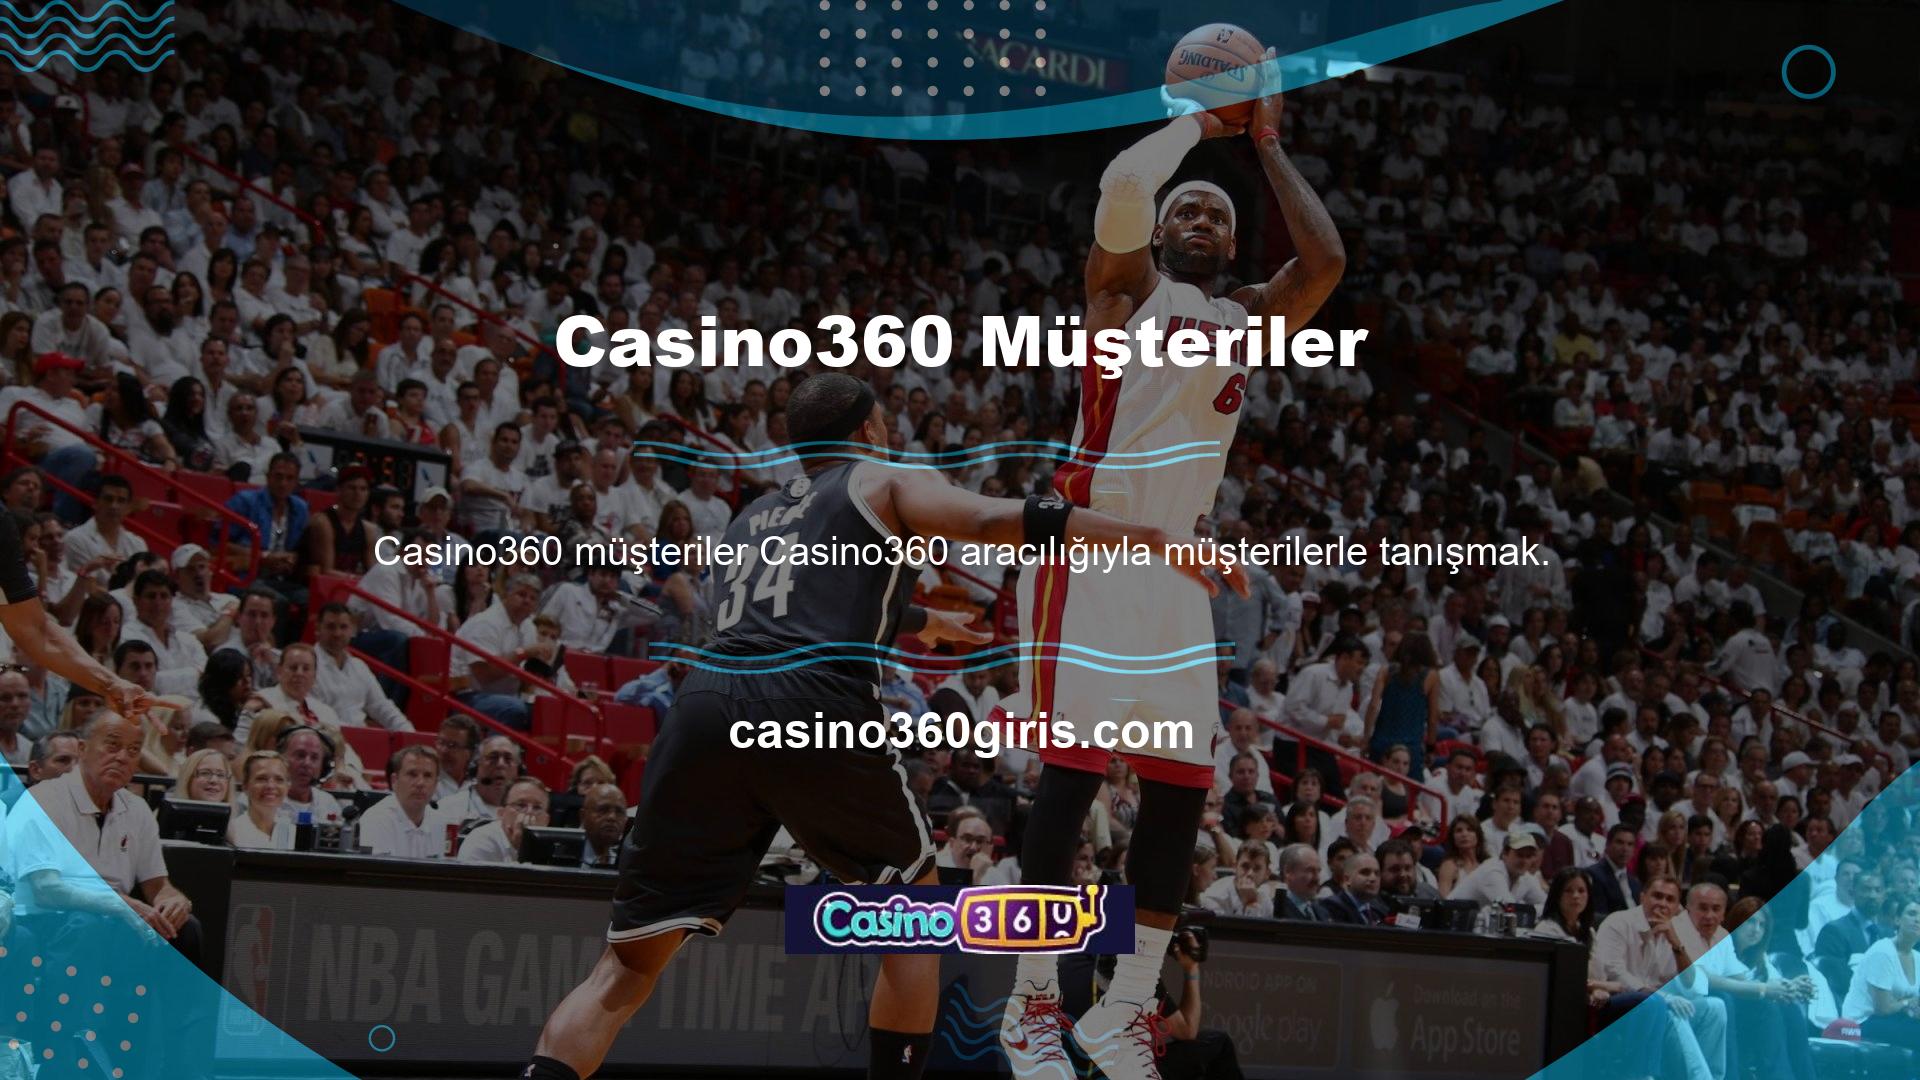 Müşterilerle iletişim kurmak Casino360 işinin çok önemli bir yönüdür ve üyelerine çeşitli kanallar aracılığıyla destek sunmaktadır